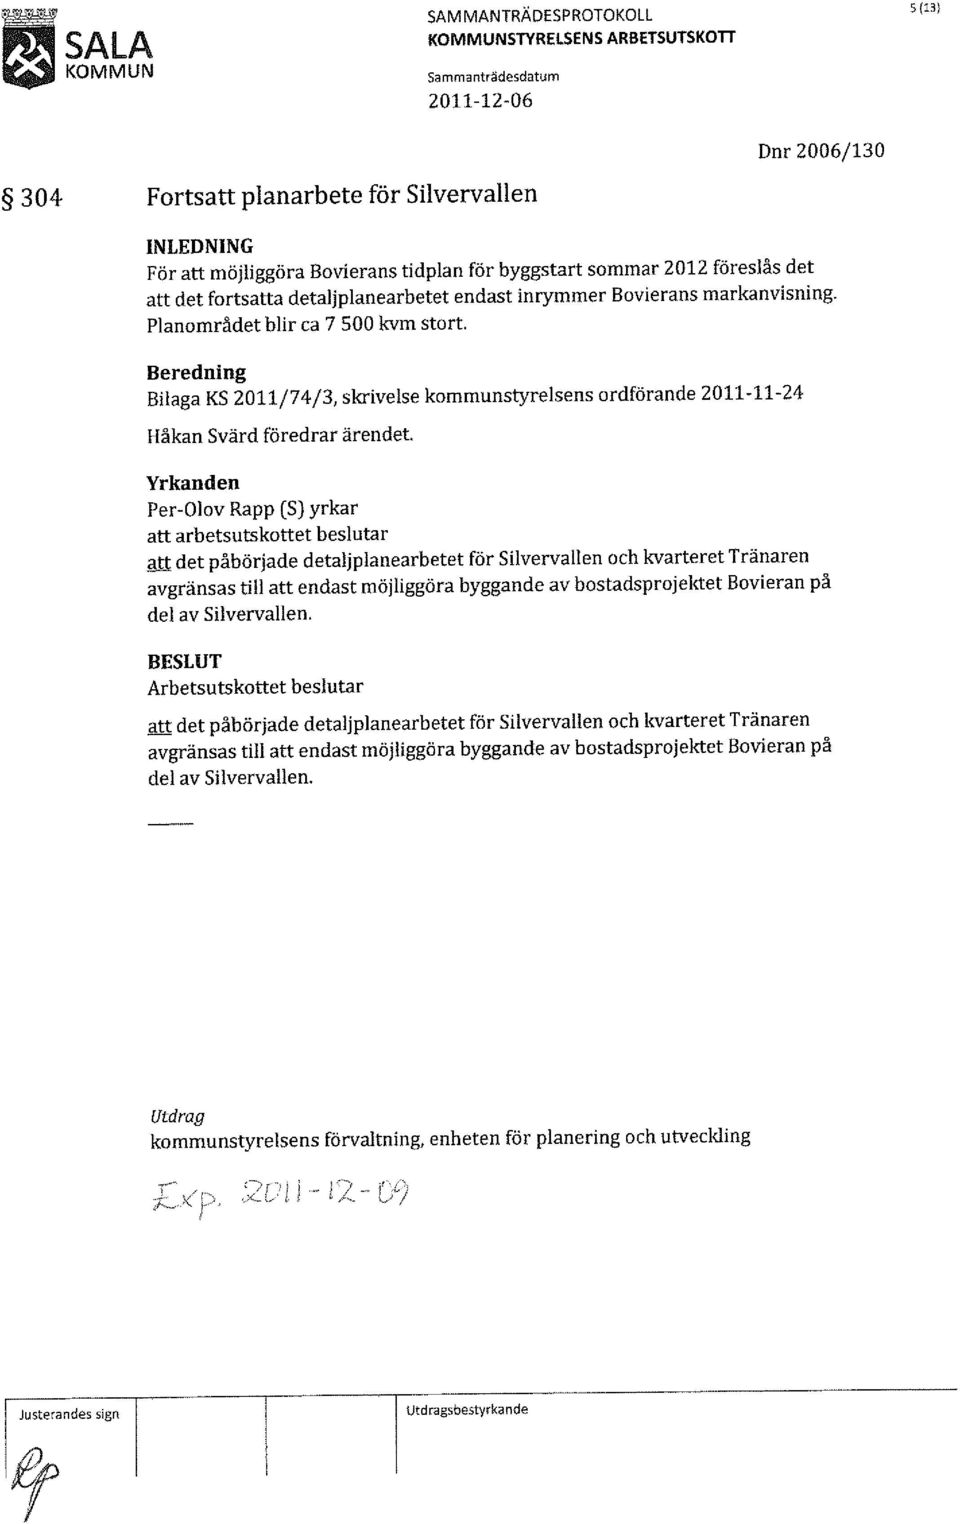 Bilaga KS 2011/74/3, skrivelse kommunstyrelsens ordförande 2011-11-24 Håkan Svärd föredrar ärendet att arbetsutskottet beslutar att det påbörjade detaljplanearbetet för Silvervallen och kvarteret